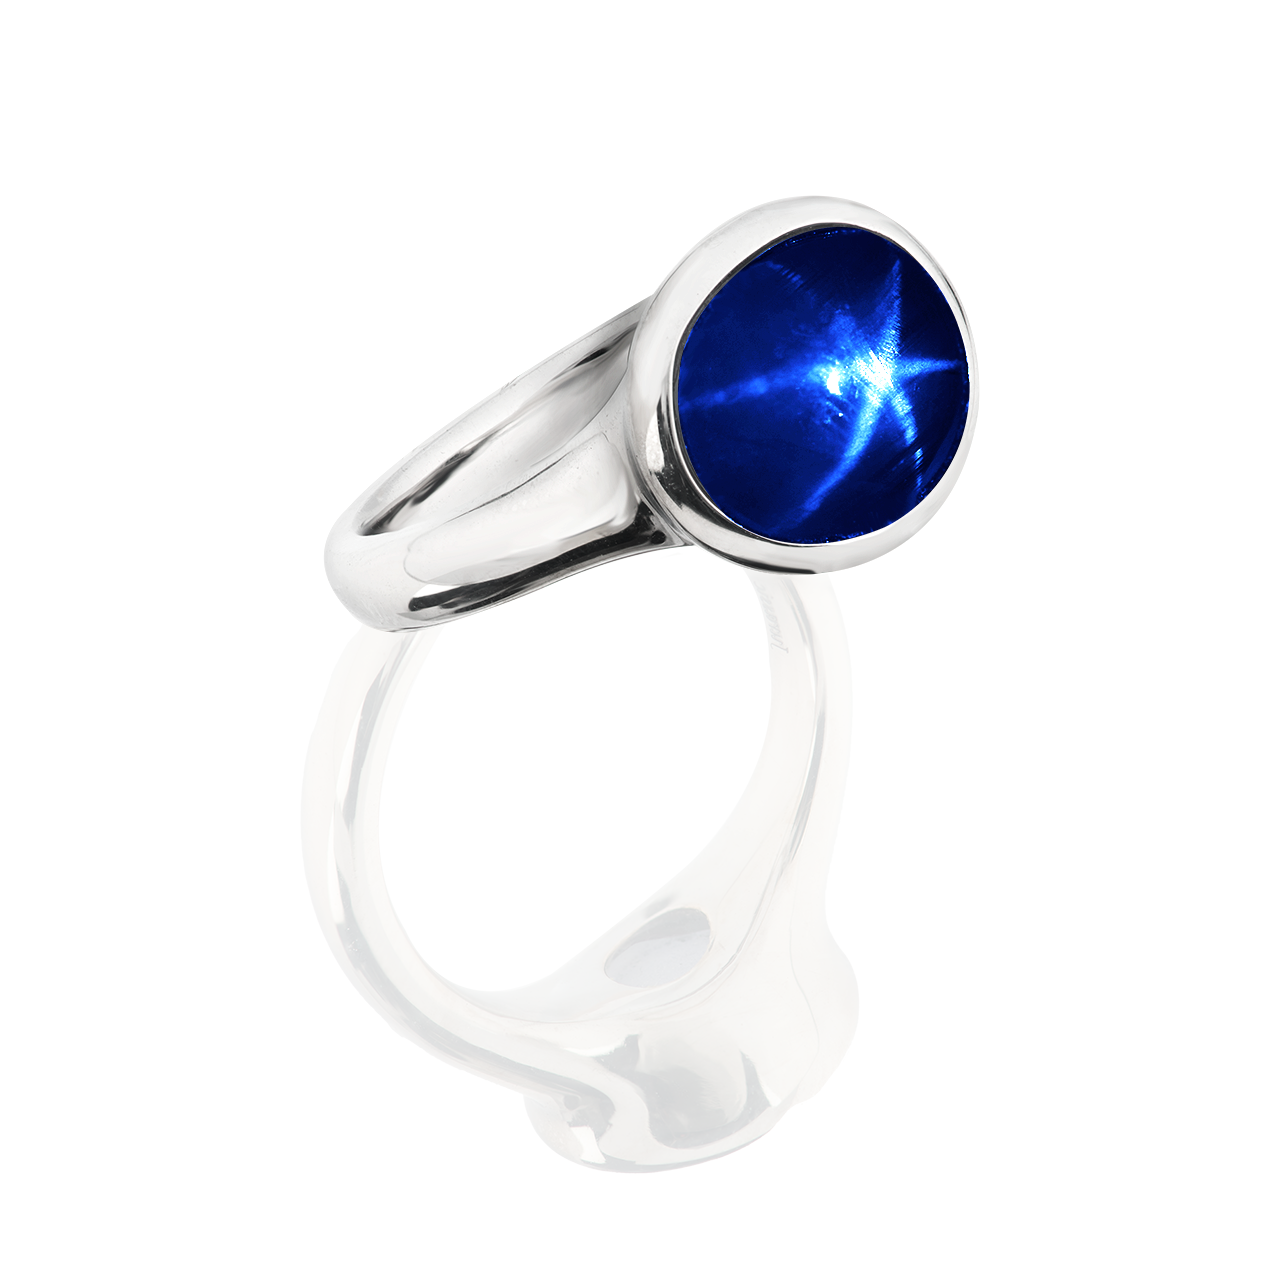 5.55 克拉 藍寶星石戒
Star Sapphire Ring